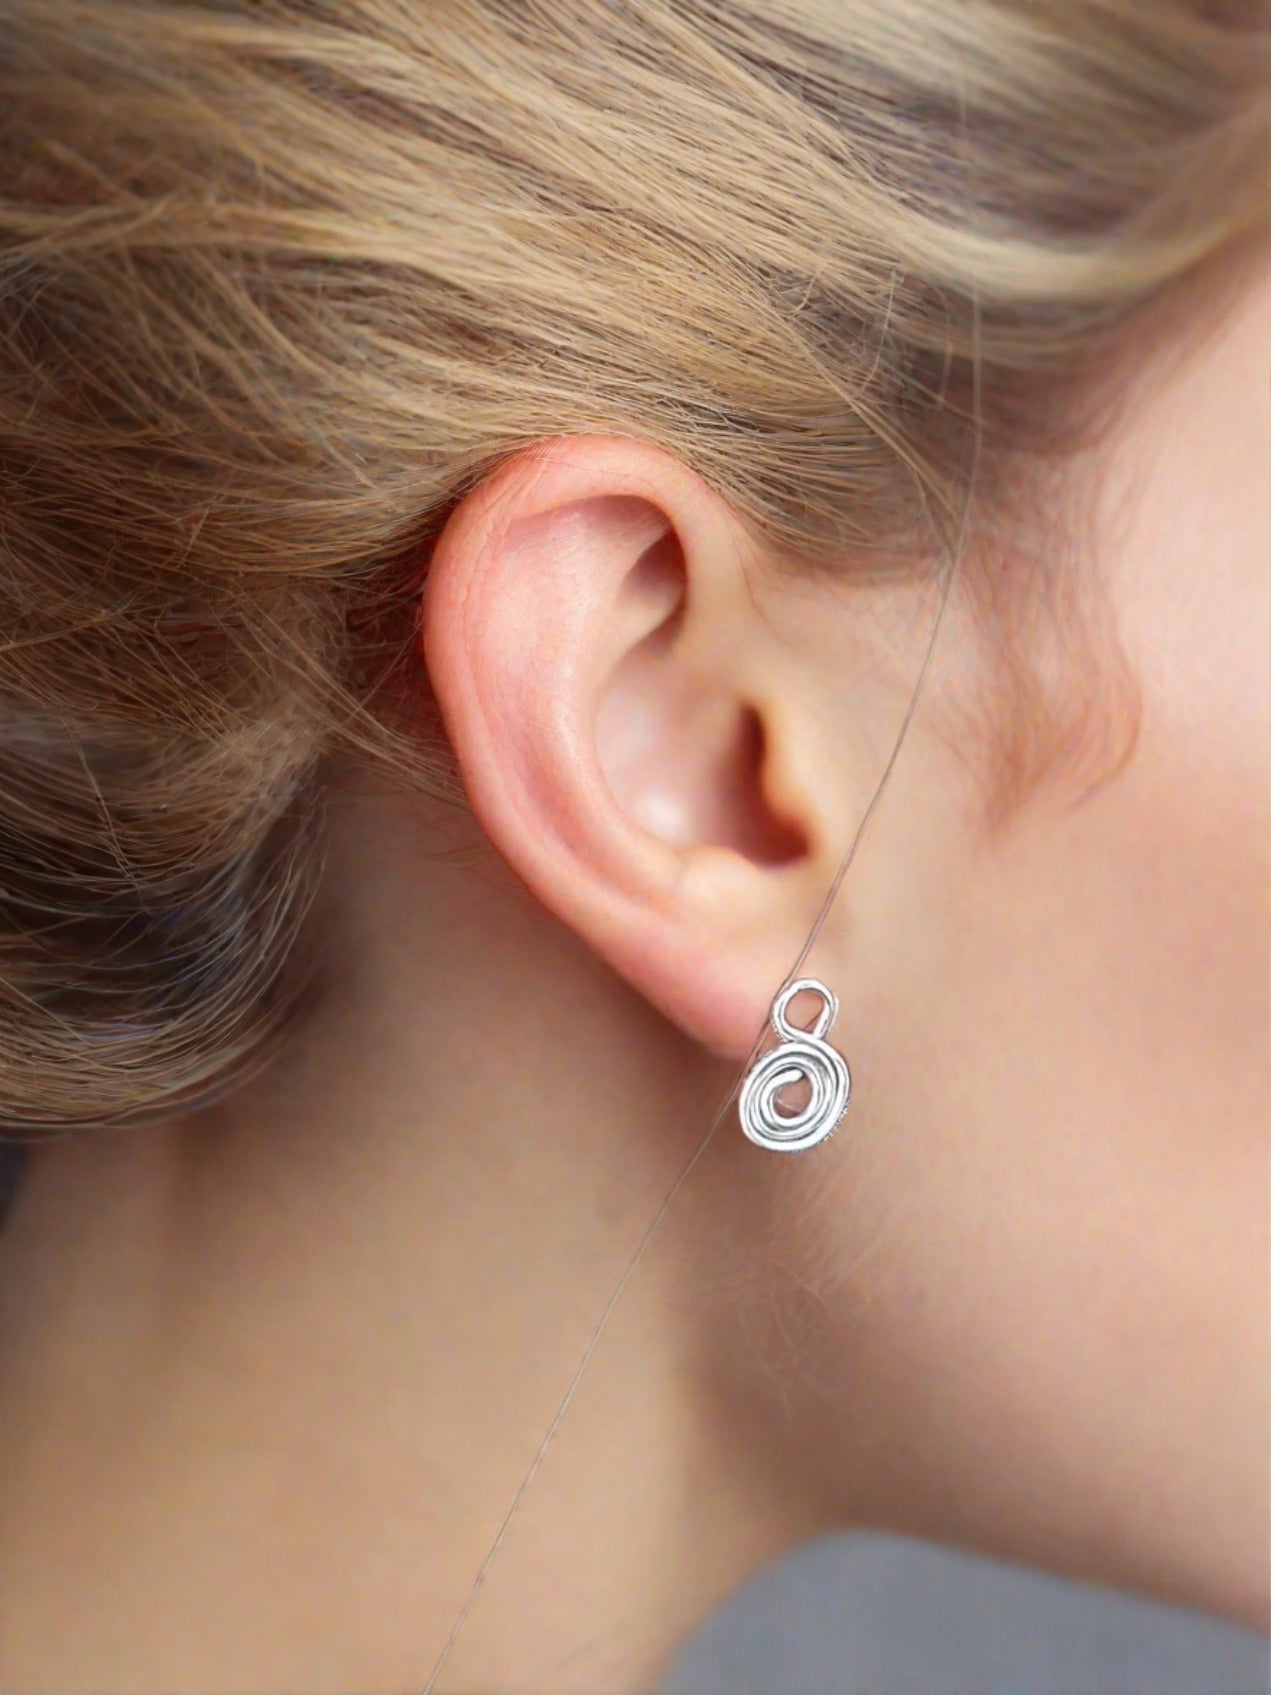 Gratitude Symbol Earrings - Lightweight & Meaningful Daily Jewelry - Jaclyn Nicole